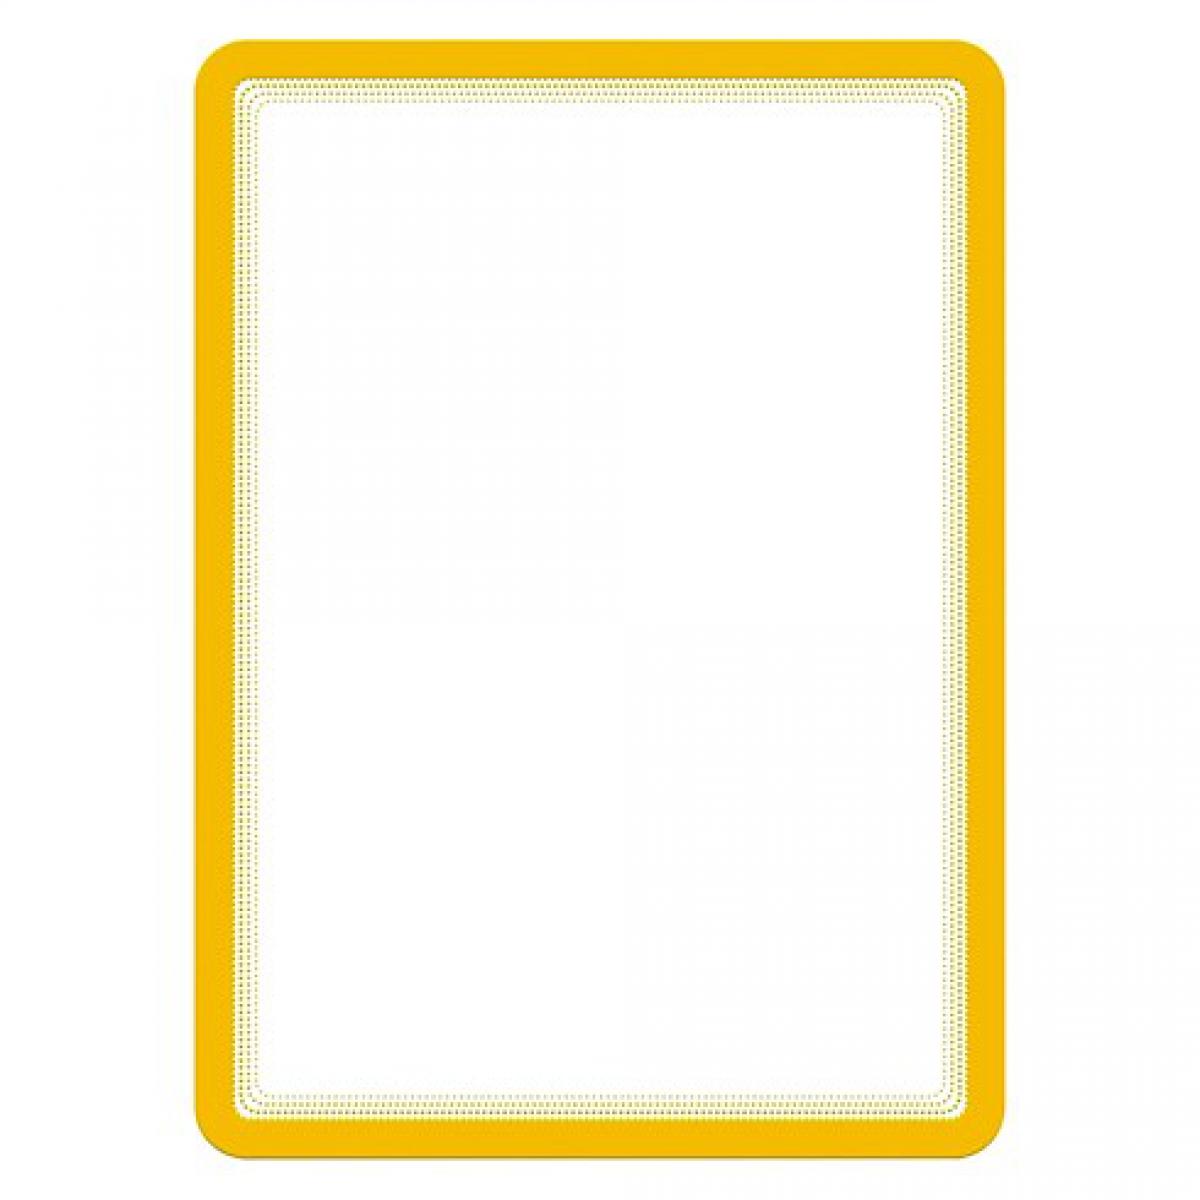 Tarifold - Pochette adhésive Magneto Tarifold jaune- Poster A4 - Lot de 2 - Accessoires Bureau